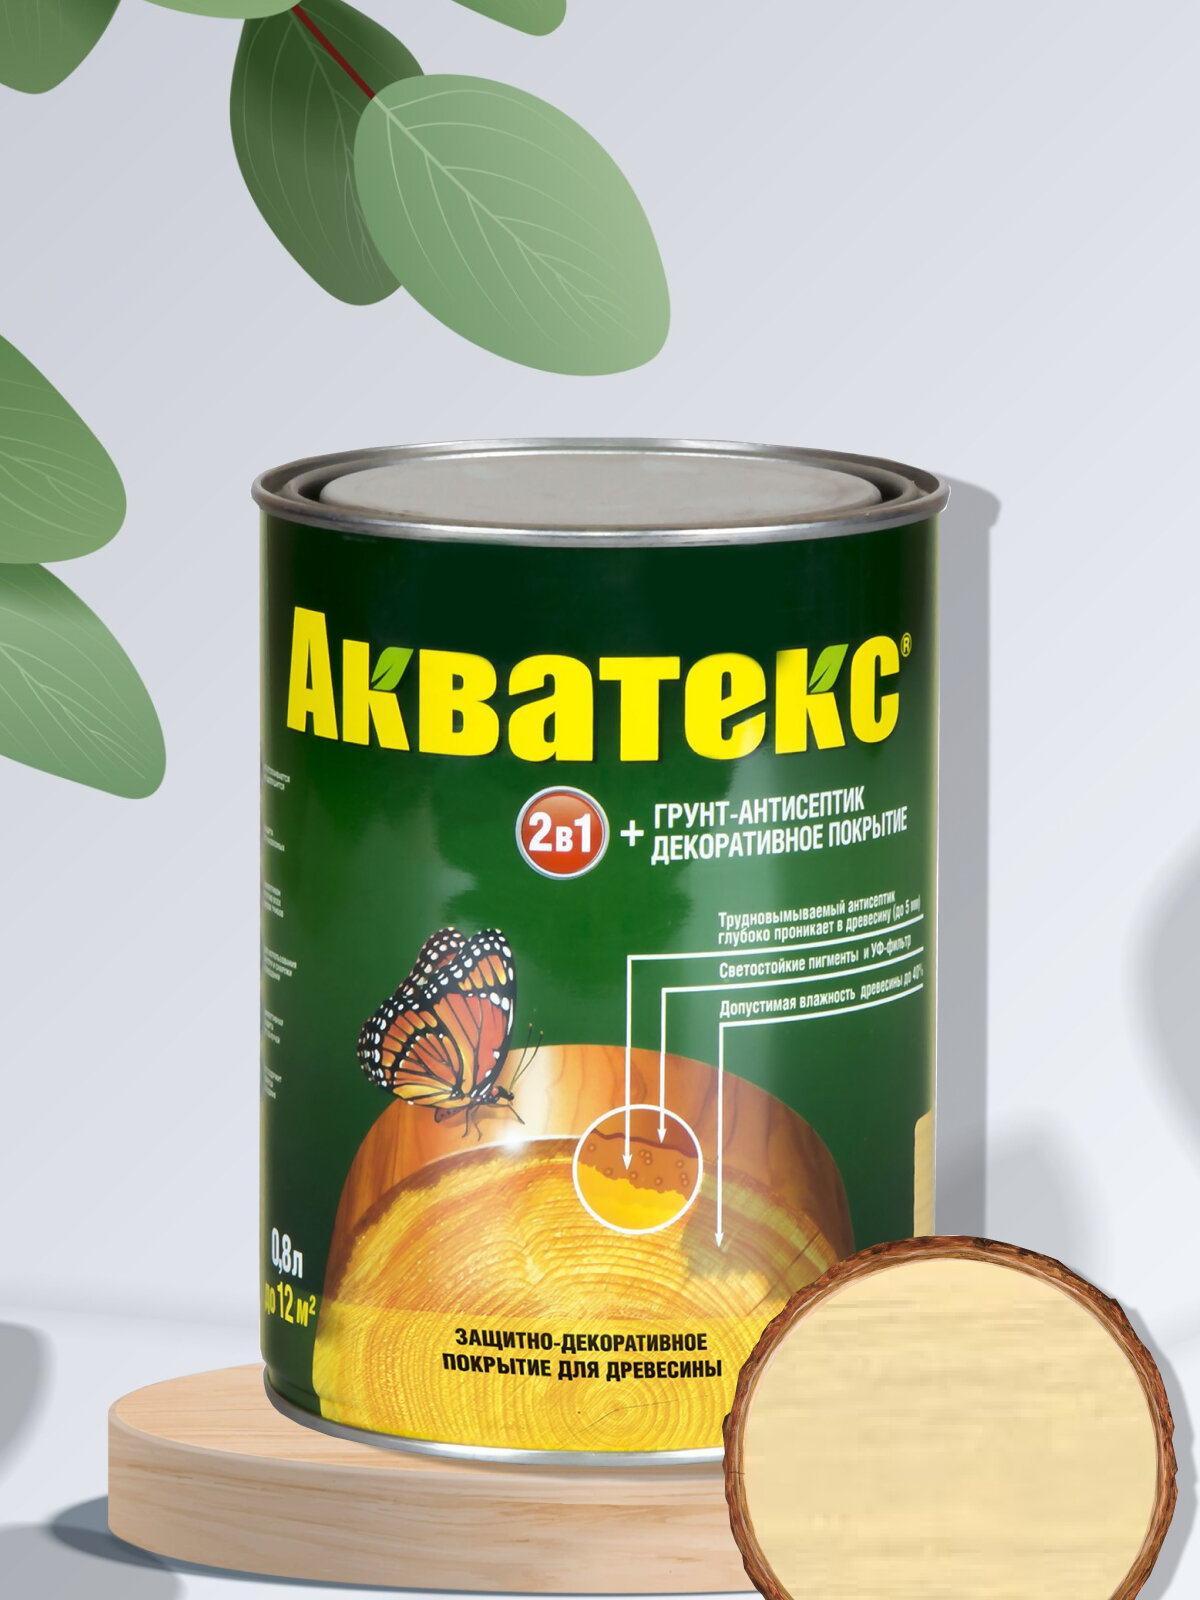 Акватекс" - декоративная пропитка и грунтовка объемом 0,8 литра, цвет "Ваниль